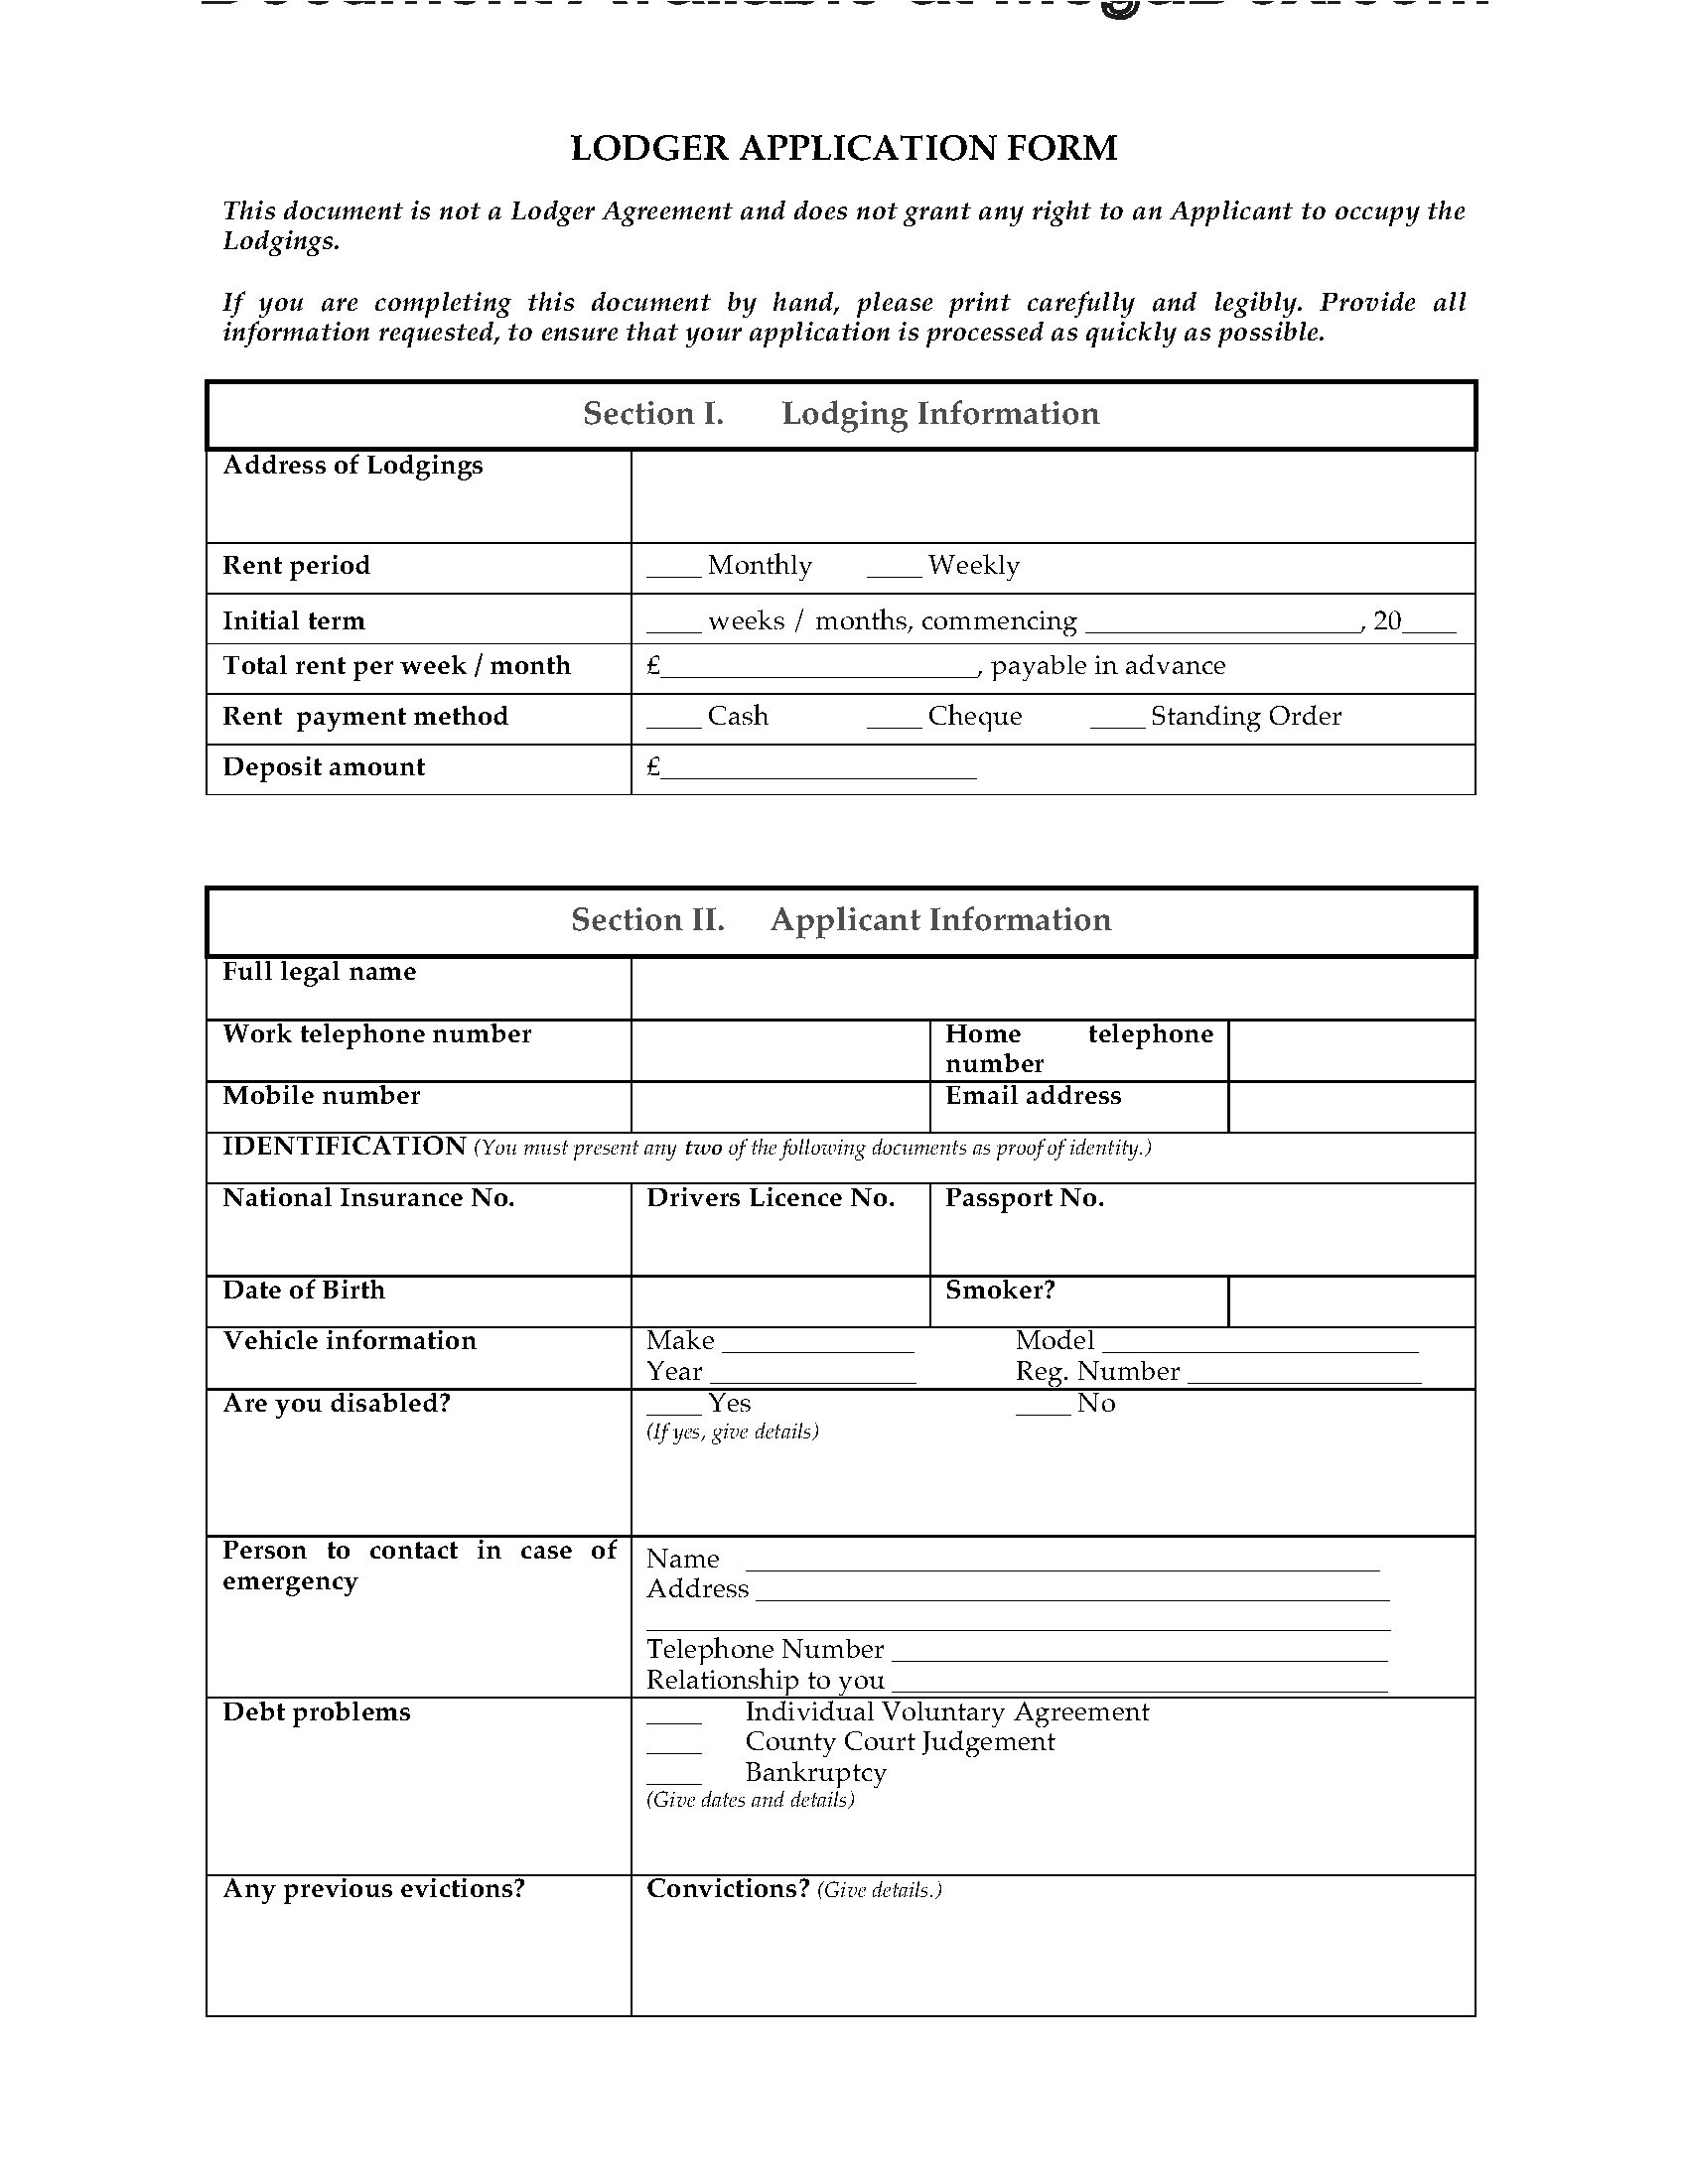 uk lodger application form